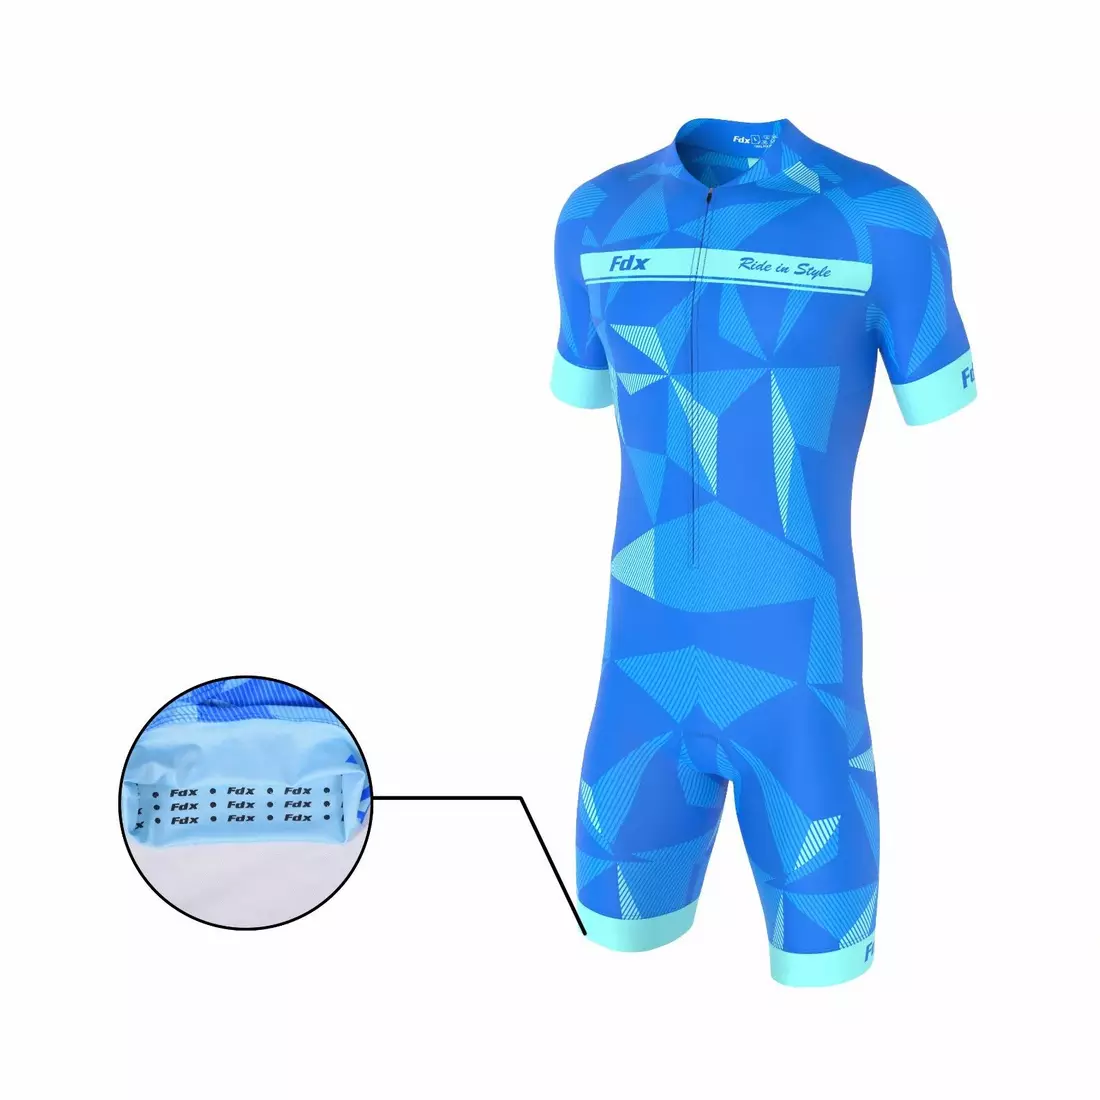 Jednodílná cyklistická kombinéza/oblek FDX 1270, modrá